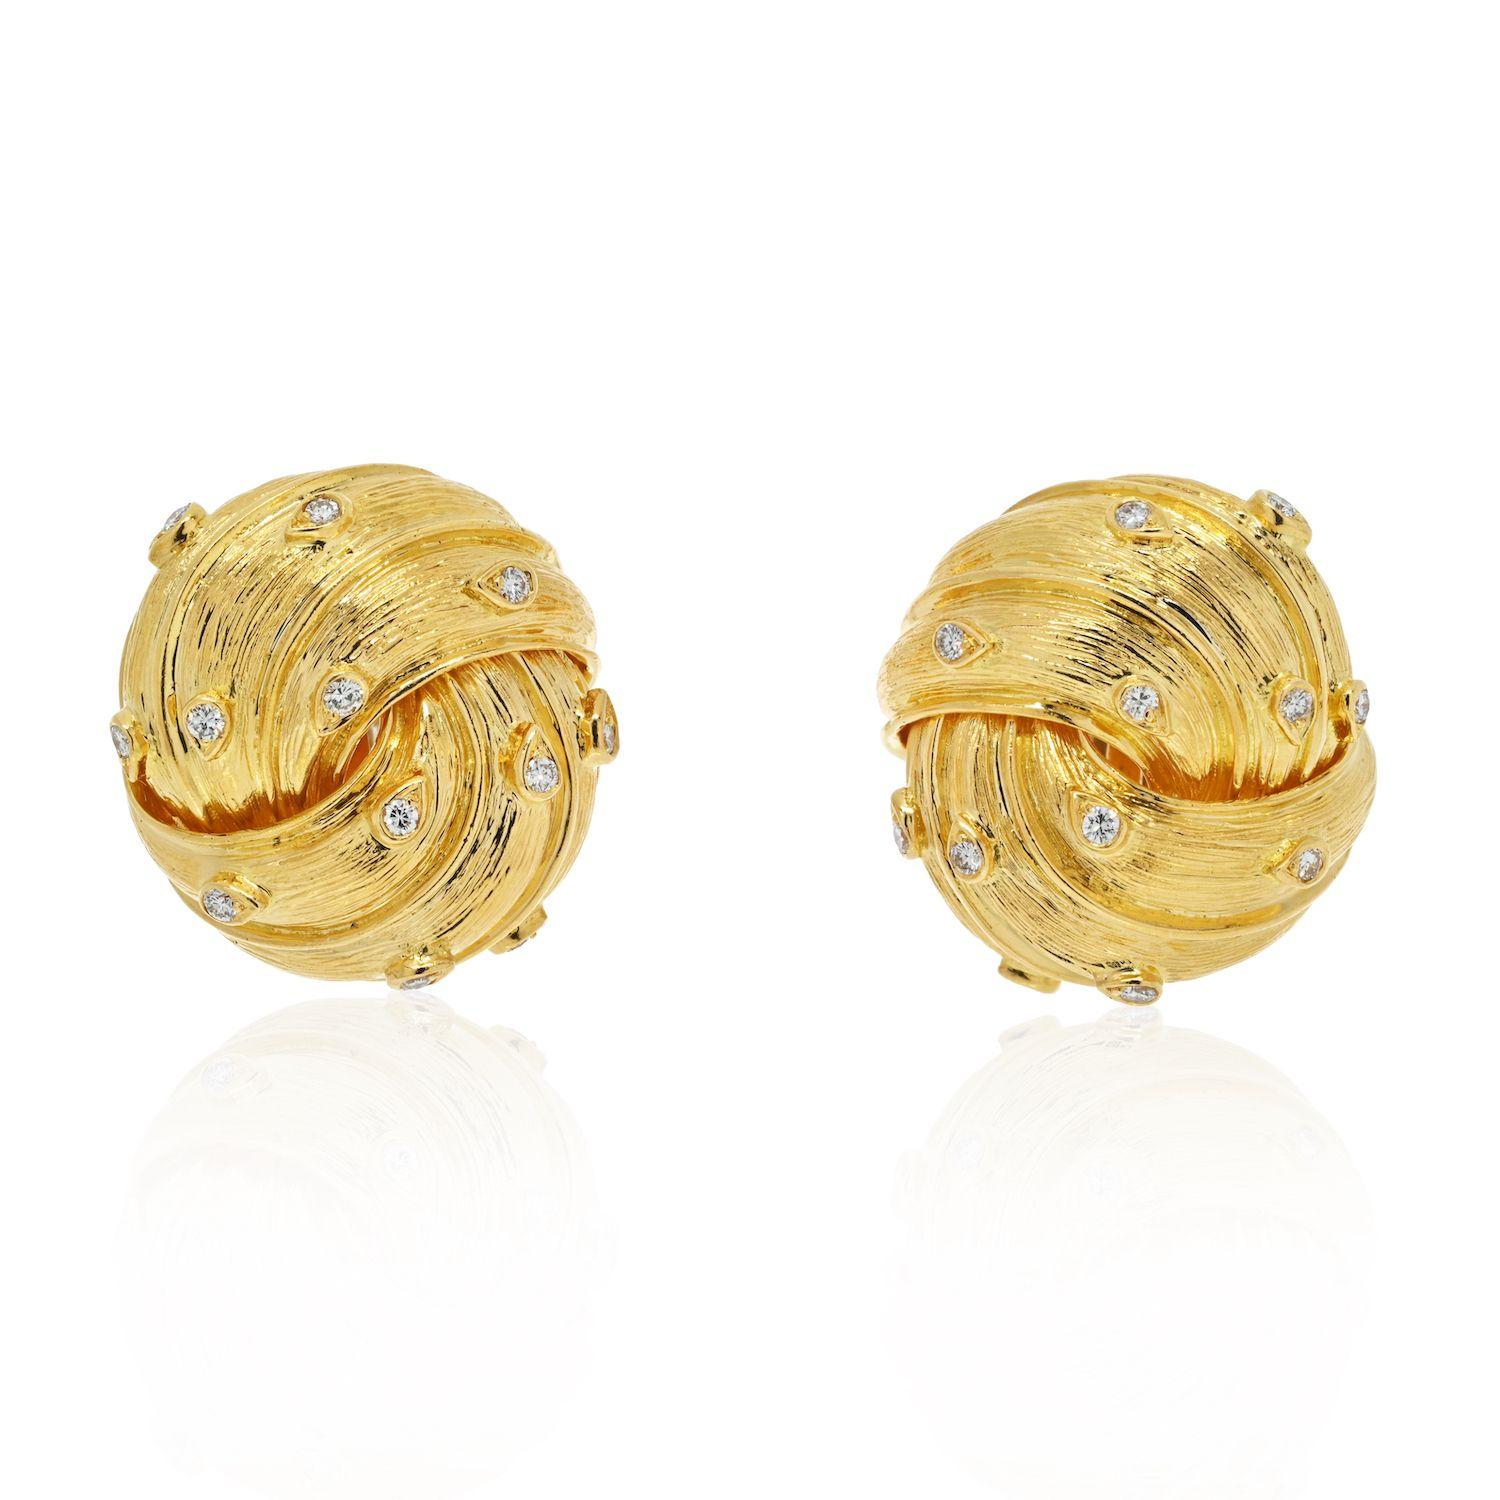 Les boucles d'oreilles classiques en or sont des bijoux intemporels qui ne se démodent jamais. Si vous cherchez une paire de boucles d'oreilles en or, essayez cette fabuleuse paire en or jaune 18 carats de David Webb. Ils sont incroyablement